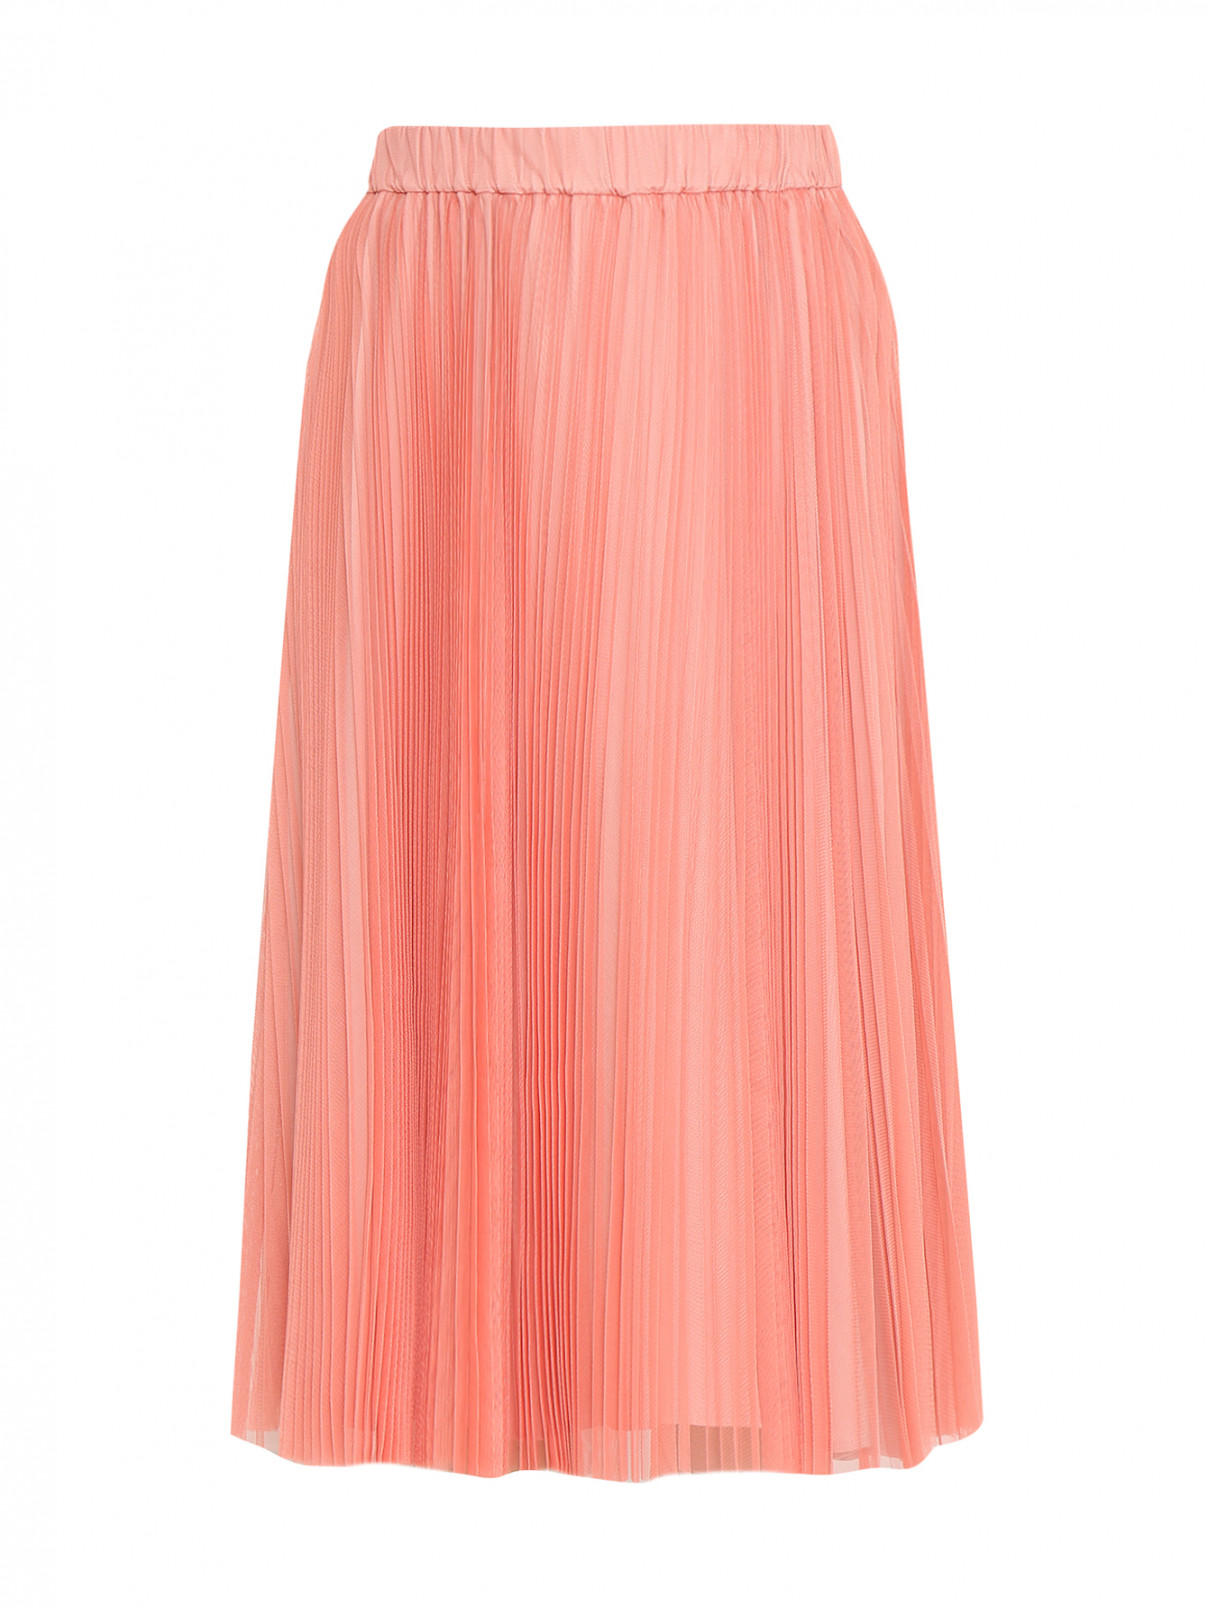 Плиссированная юбка-миди на резинке Max&Co  –  Общий вид  – Цвет:  Розовый